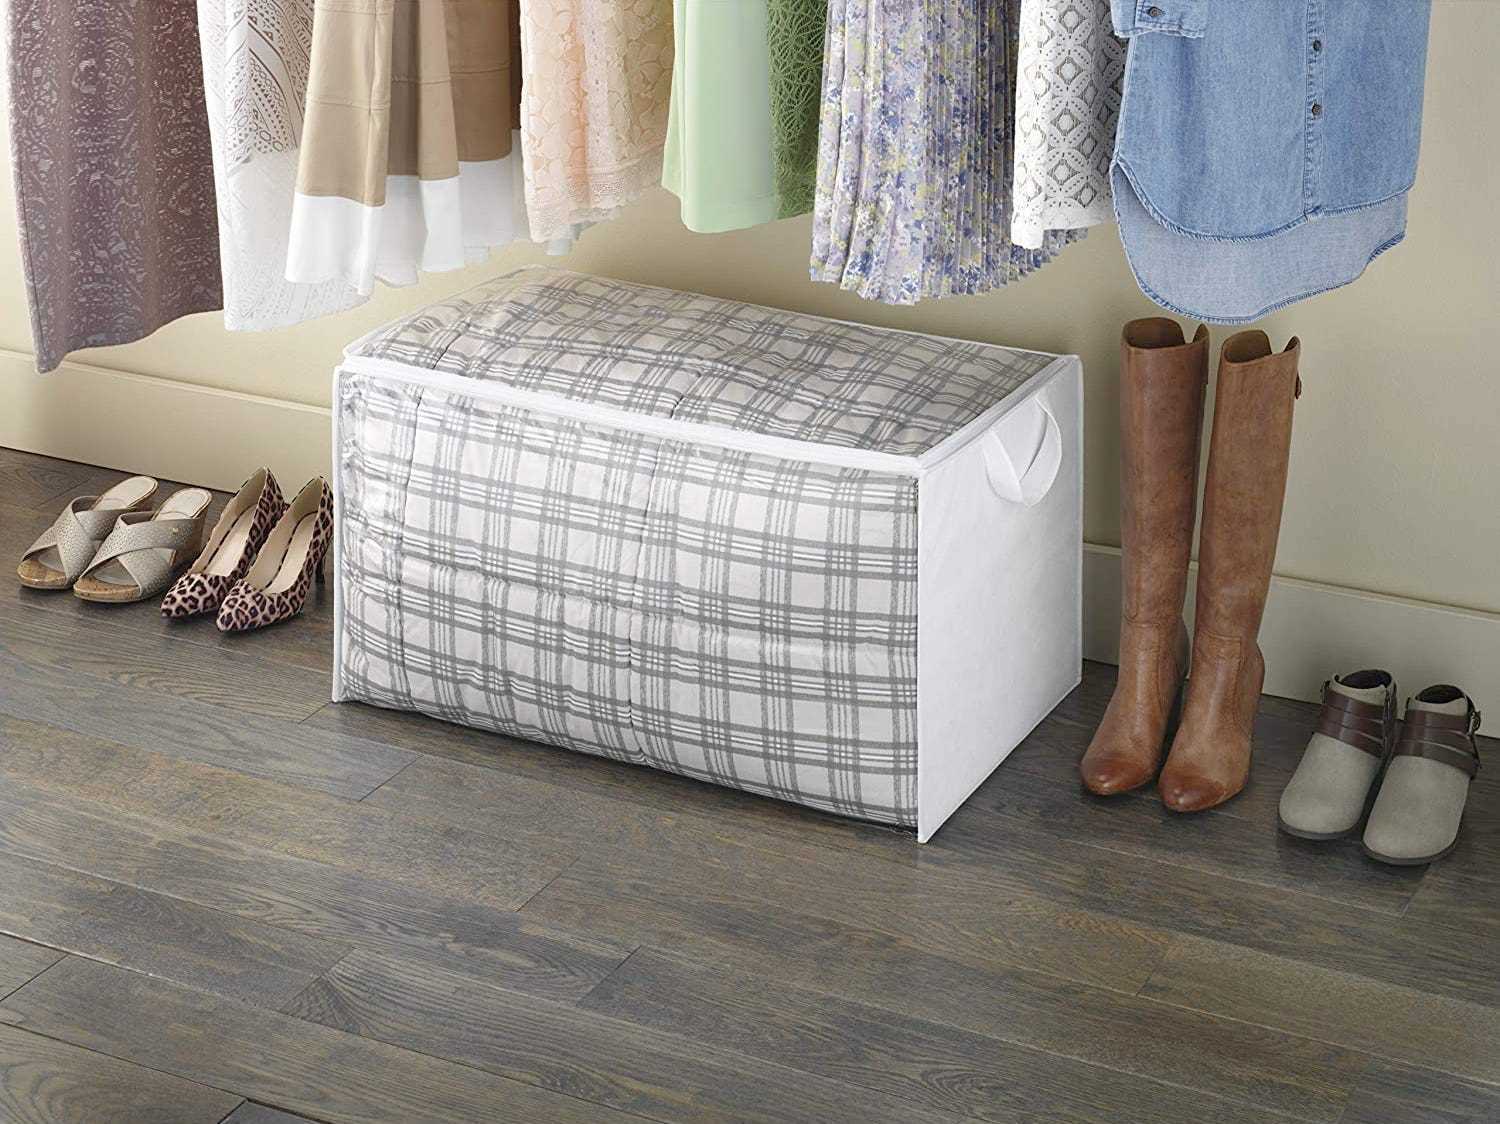 Ein Deckenhalter sitzt in einem Schrank neben Schuhen und unter darüber hängenden Kleidungsstücken.